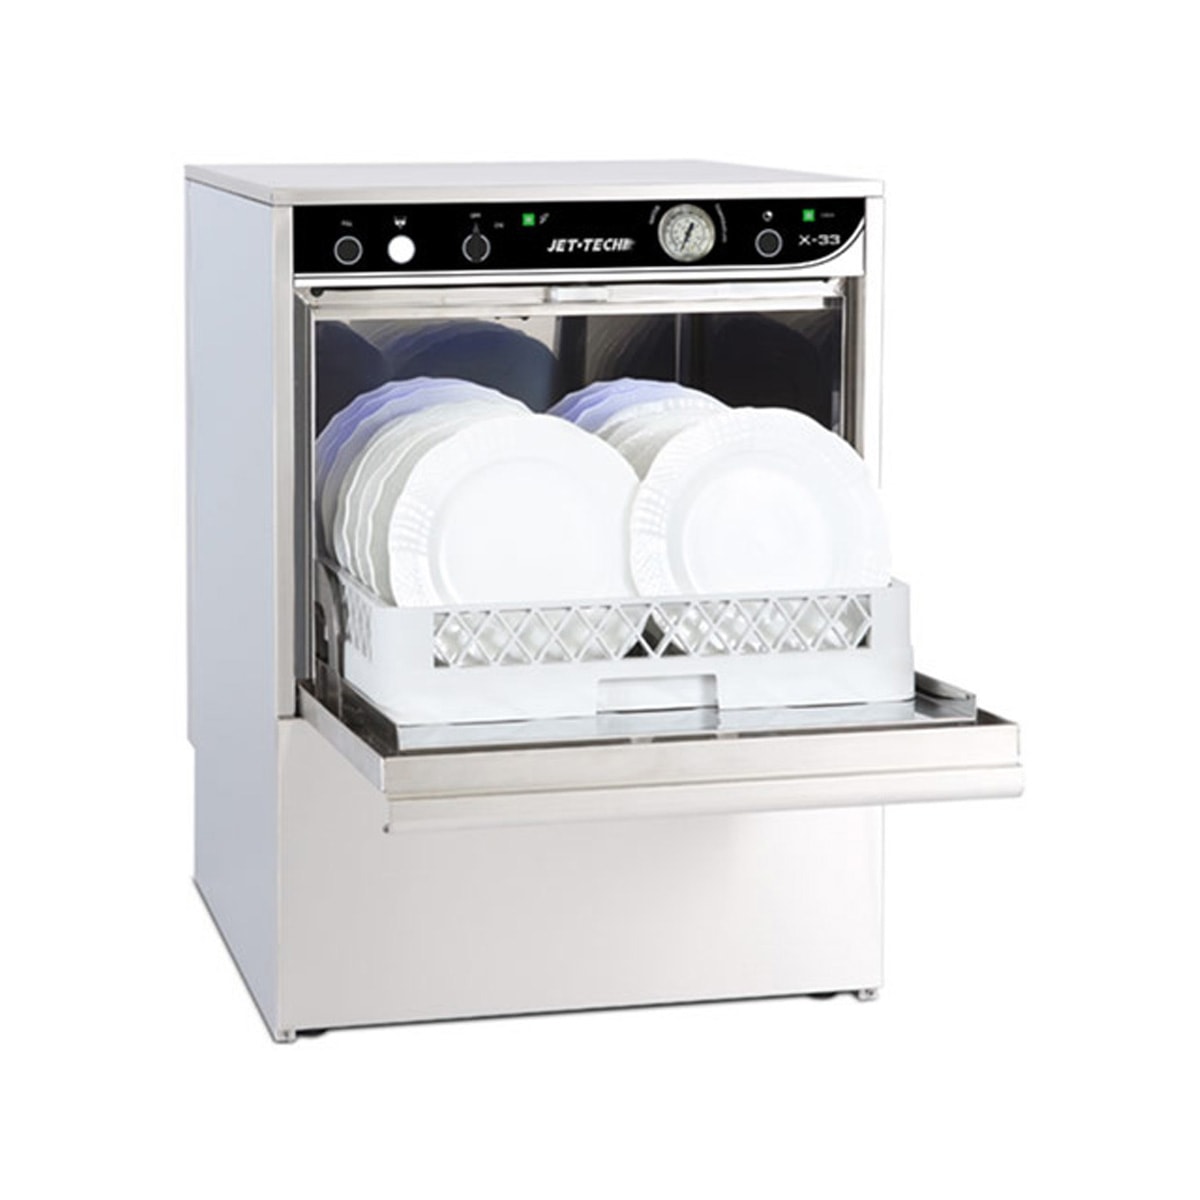 Jet-Tech Undercounter Dishwashers